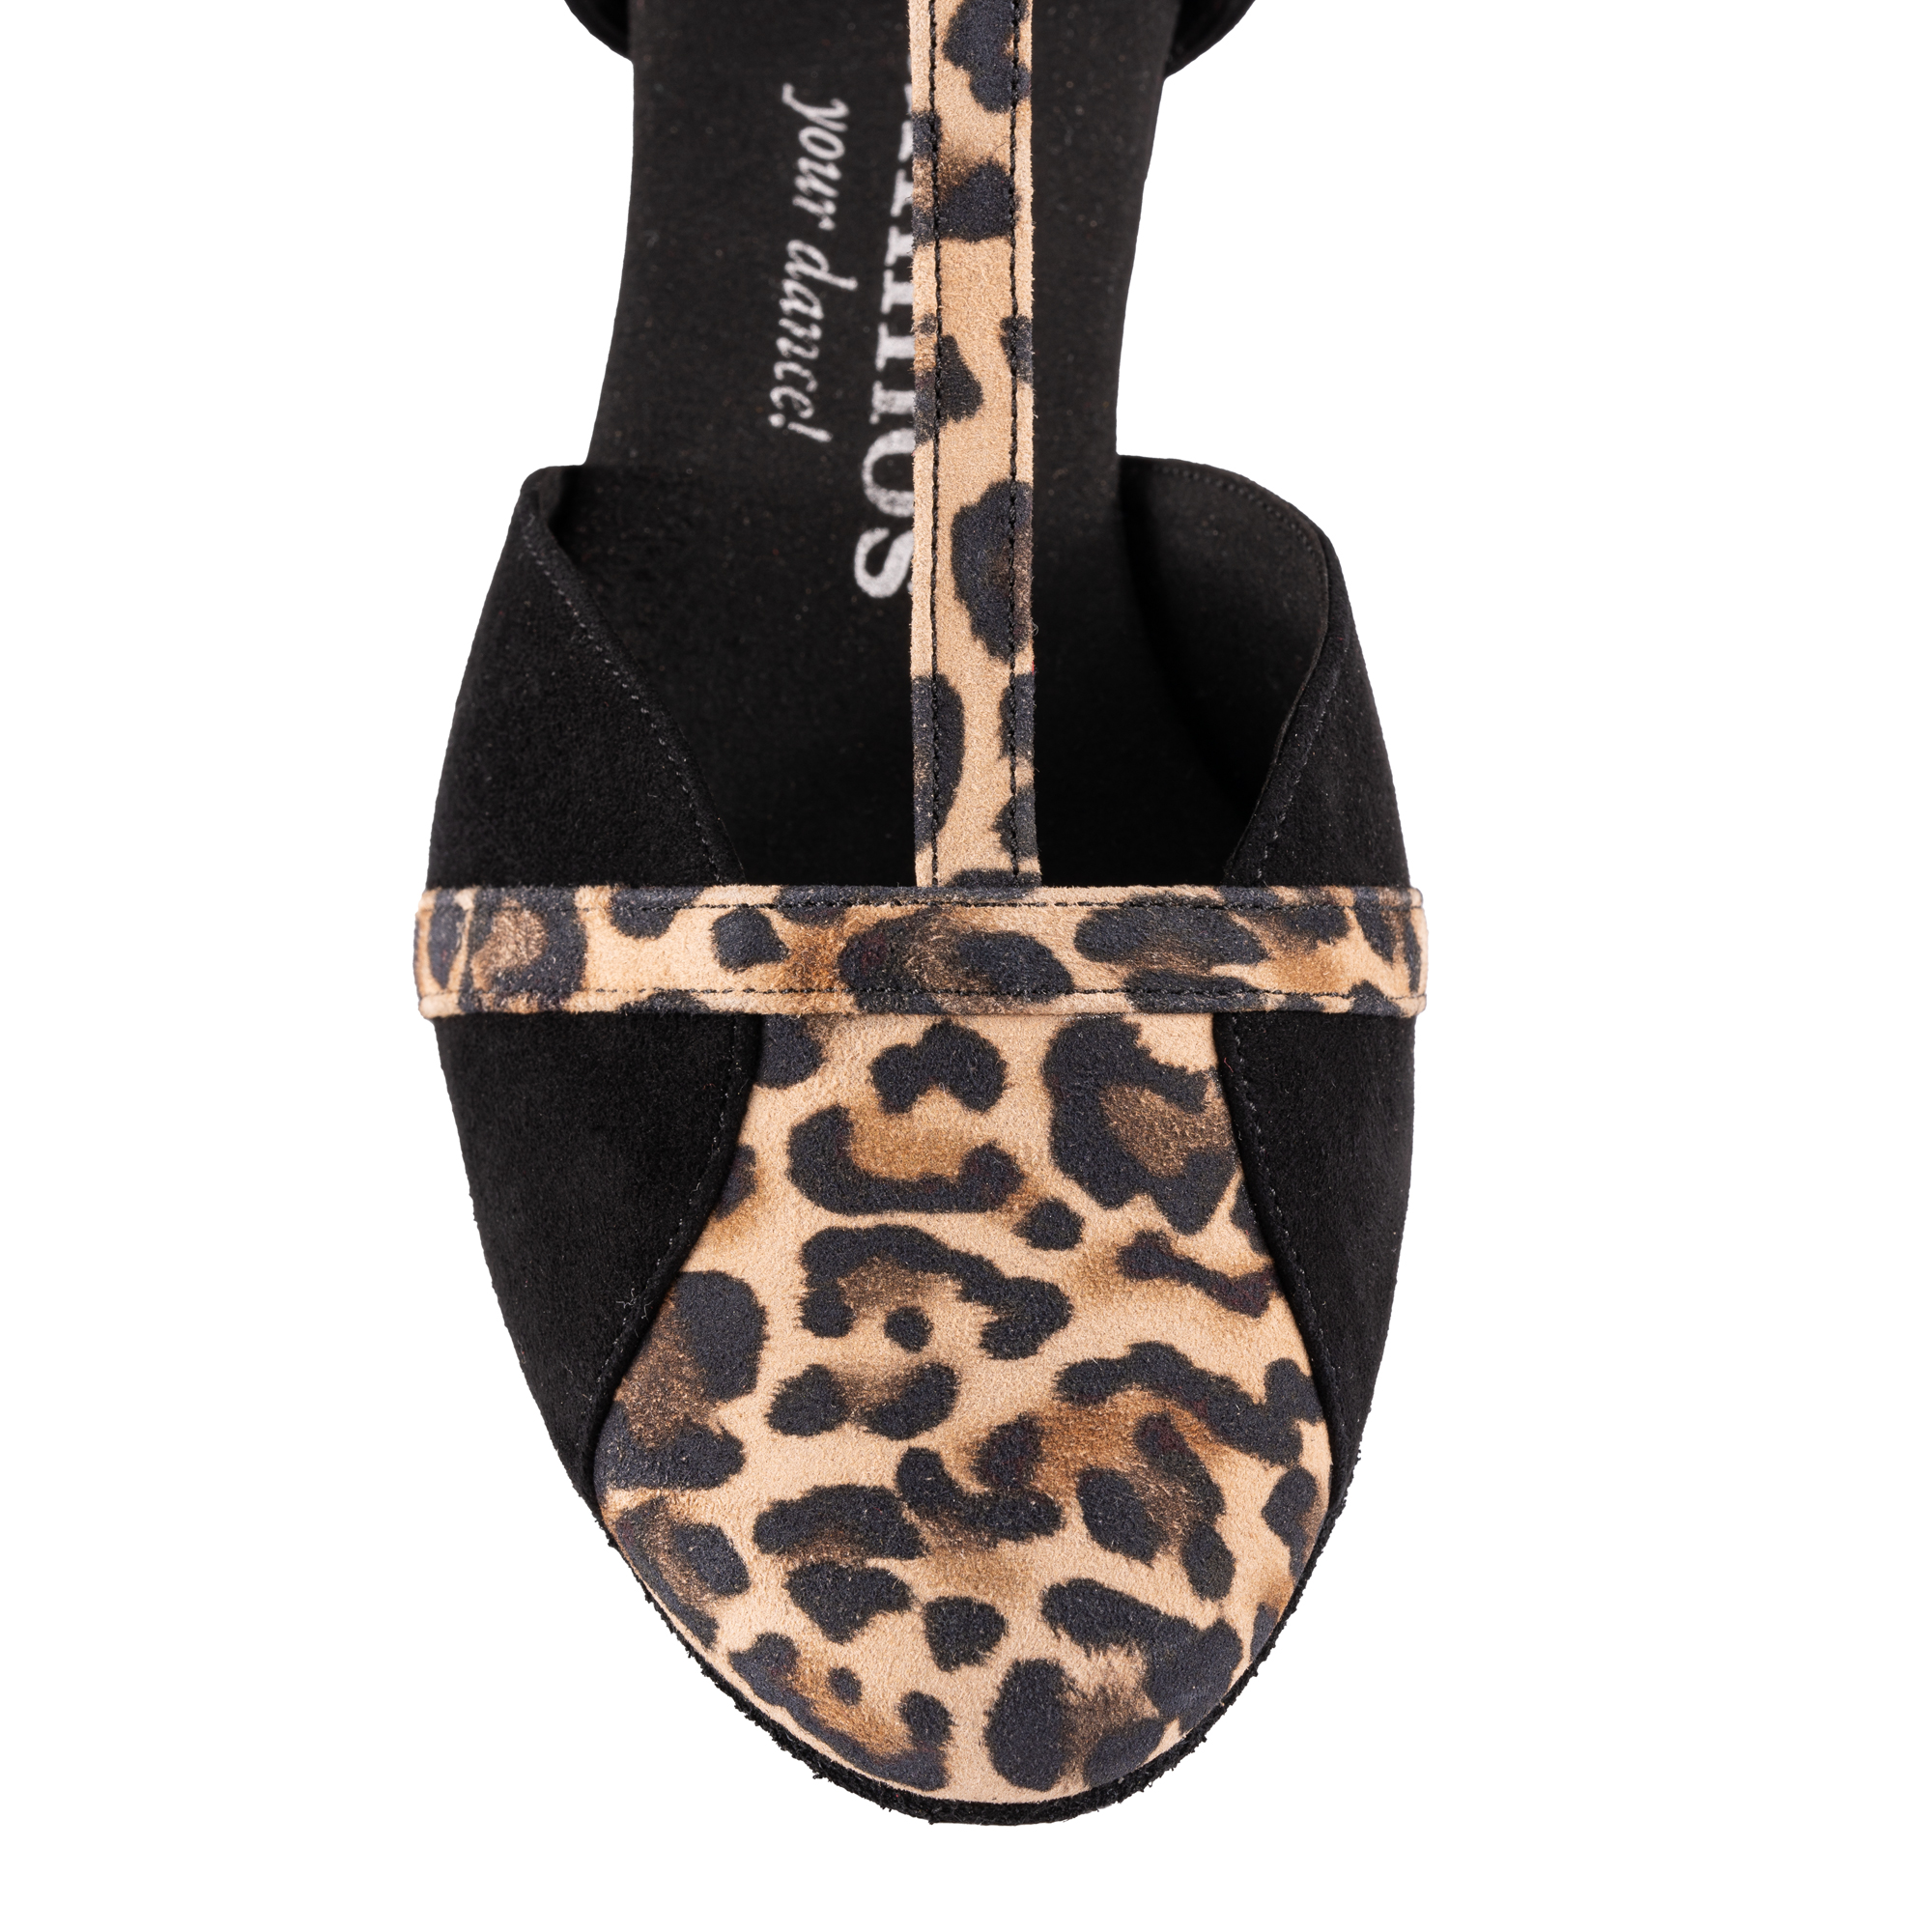 Rummos Mujeres Zapatos de Baile Ivy 024-T20 - Nubuck Negro/Leopardo - 2 cm